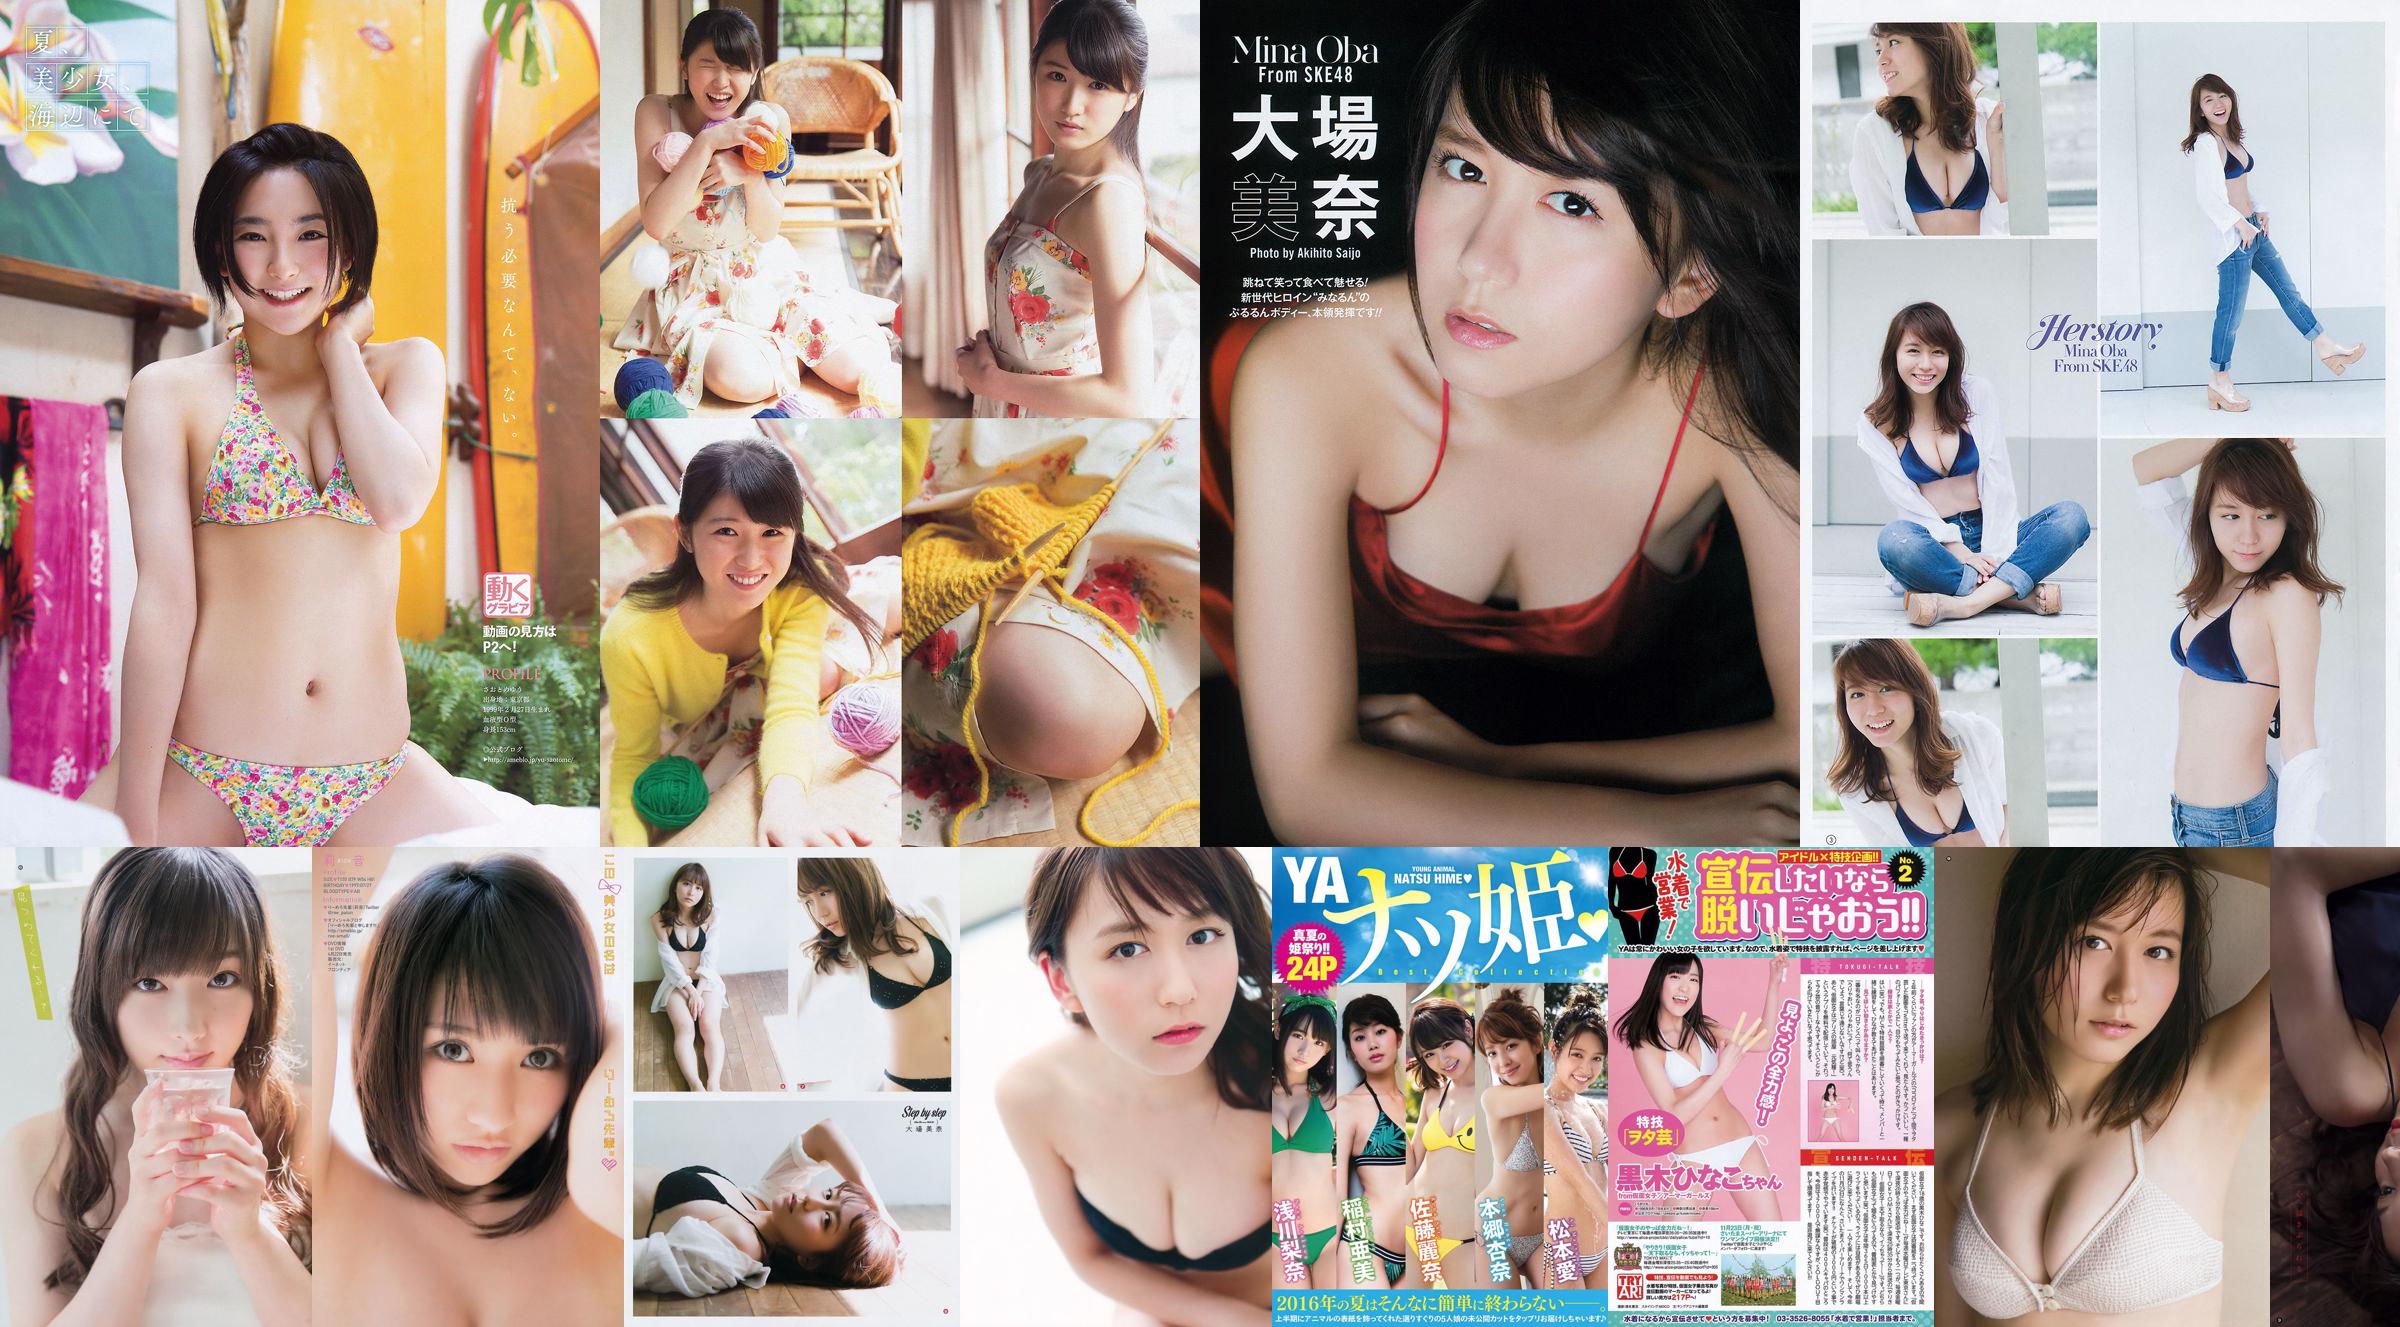 [Young Gangan] 오오바 미나 요시카와 친구 야스 눈동자 2015 년 No.10 사진 杂志 No.f9ef64 페이지 3